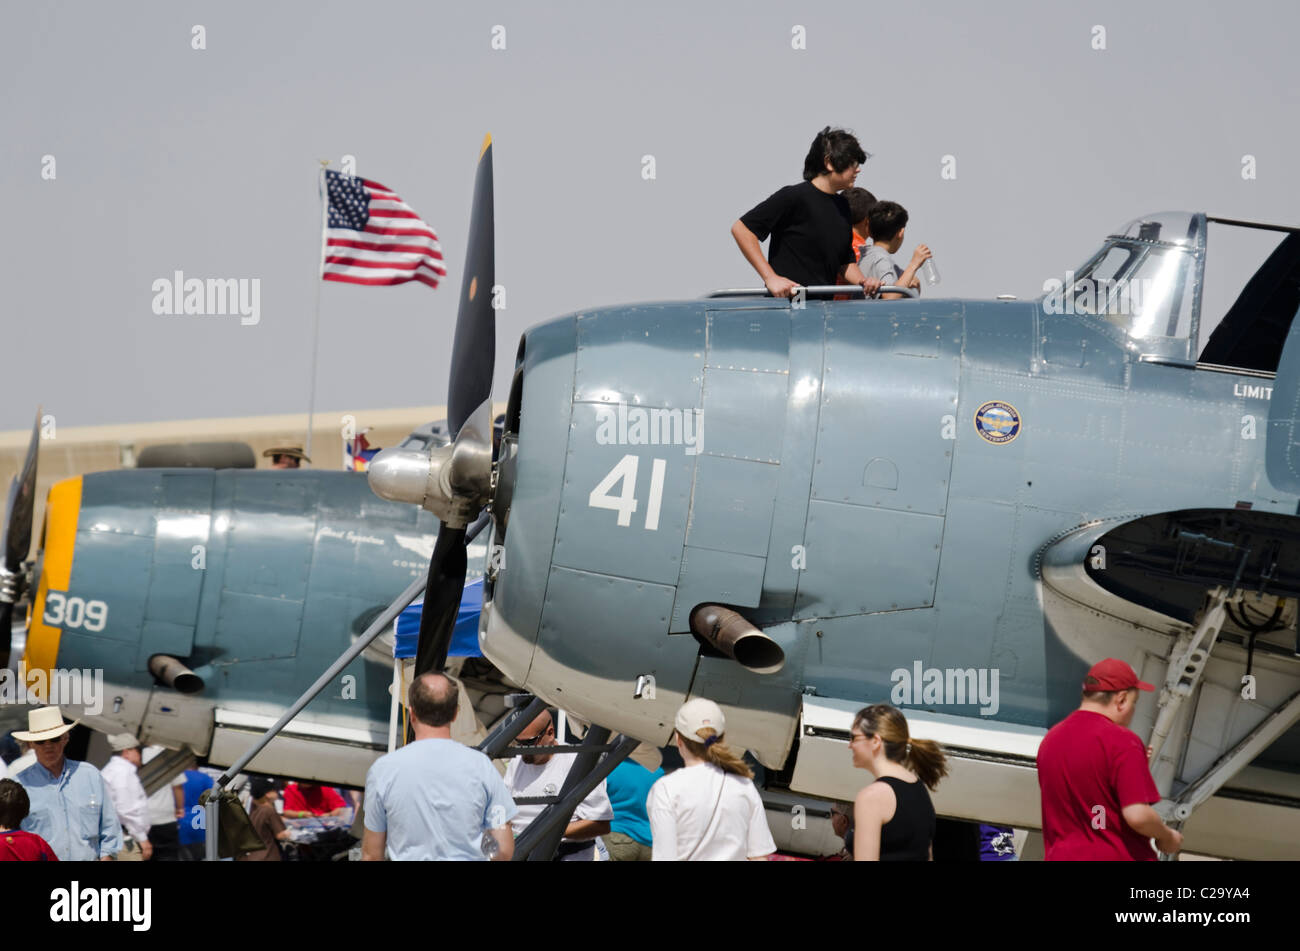 Spettatori ammirare durante la seconda guerra mondiale degli aerei da caccia a Luca giorni air show a Luke Air Force Base in Glendale, Arizona, Stati Uniti d'America Foto Stock